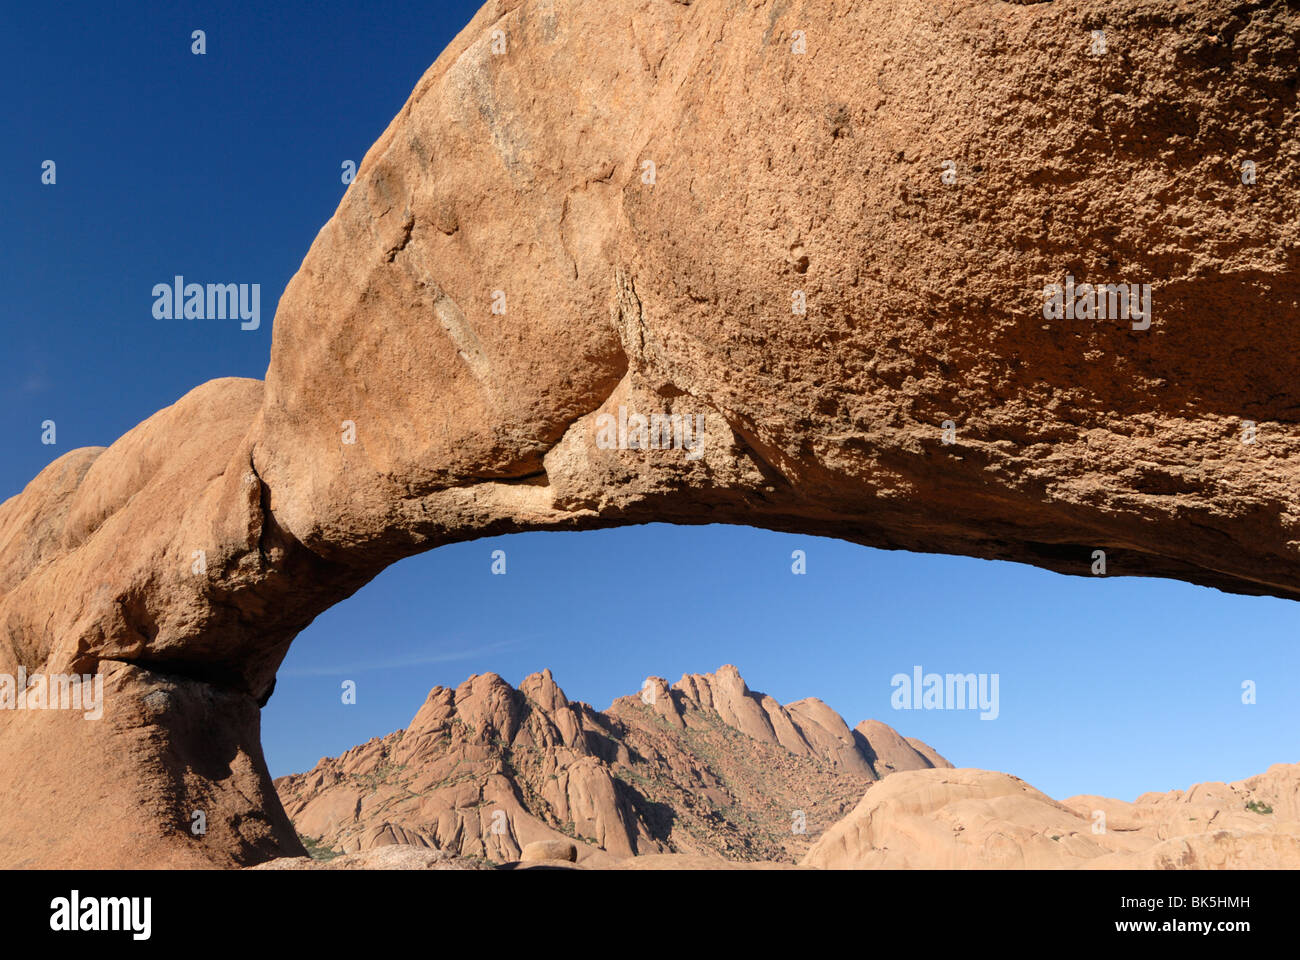 Arche naturelle, Spitskoppe montagnes, Damaraland, Namibie, Afrique Banque D'Images